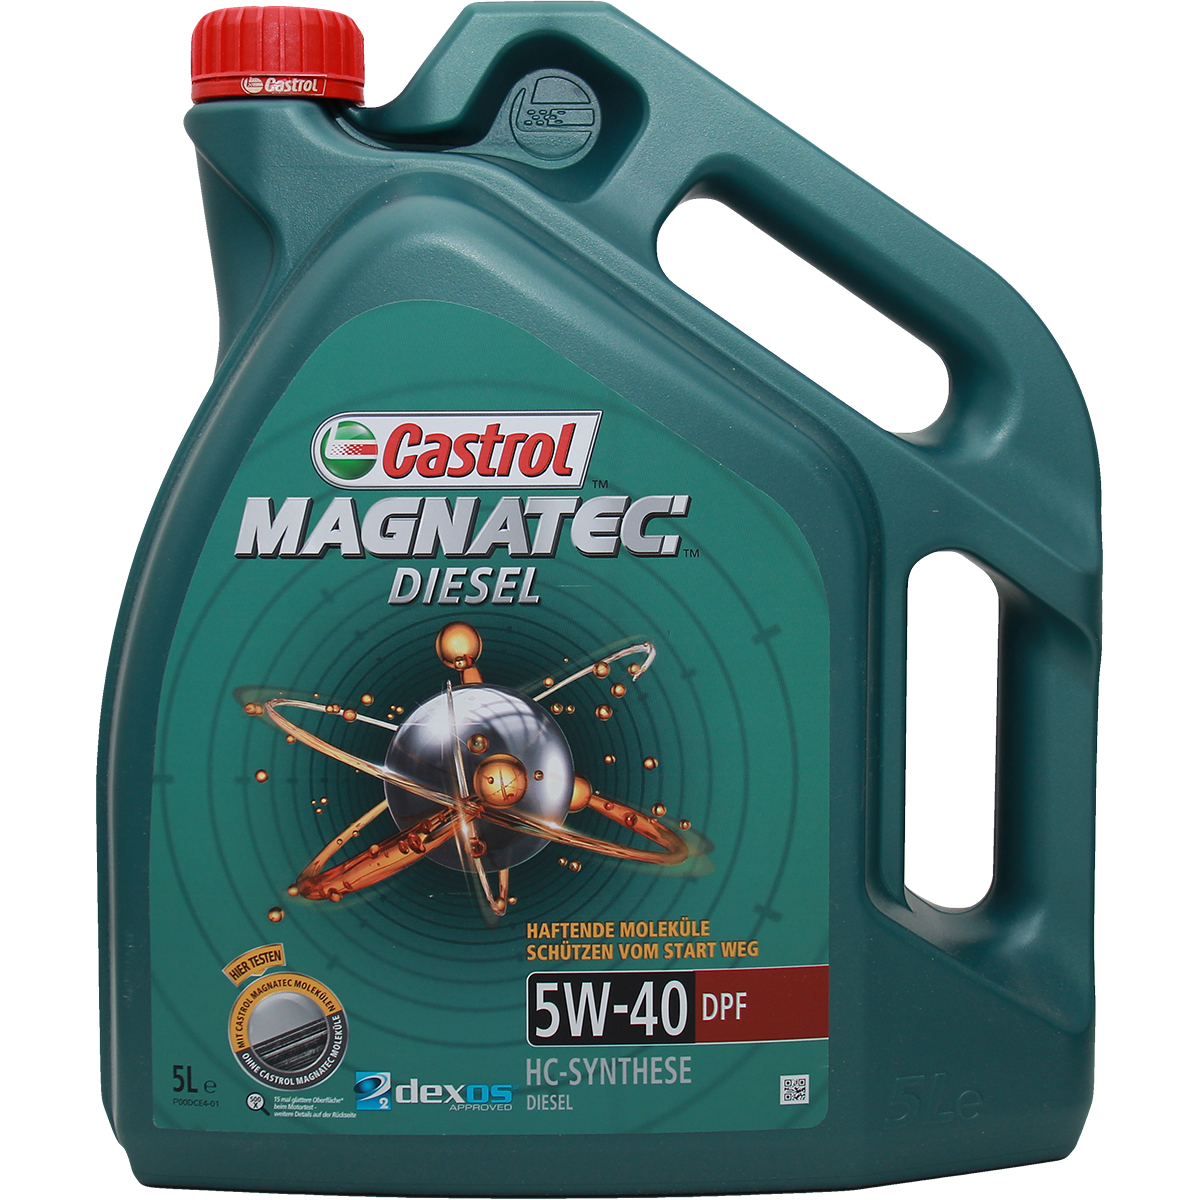 Castrol Magnatec Diesel 5W-40 DPF 2x5 Liter